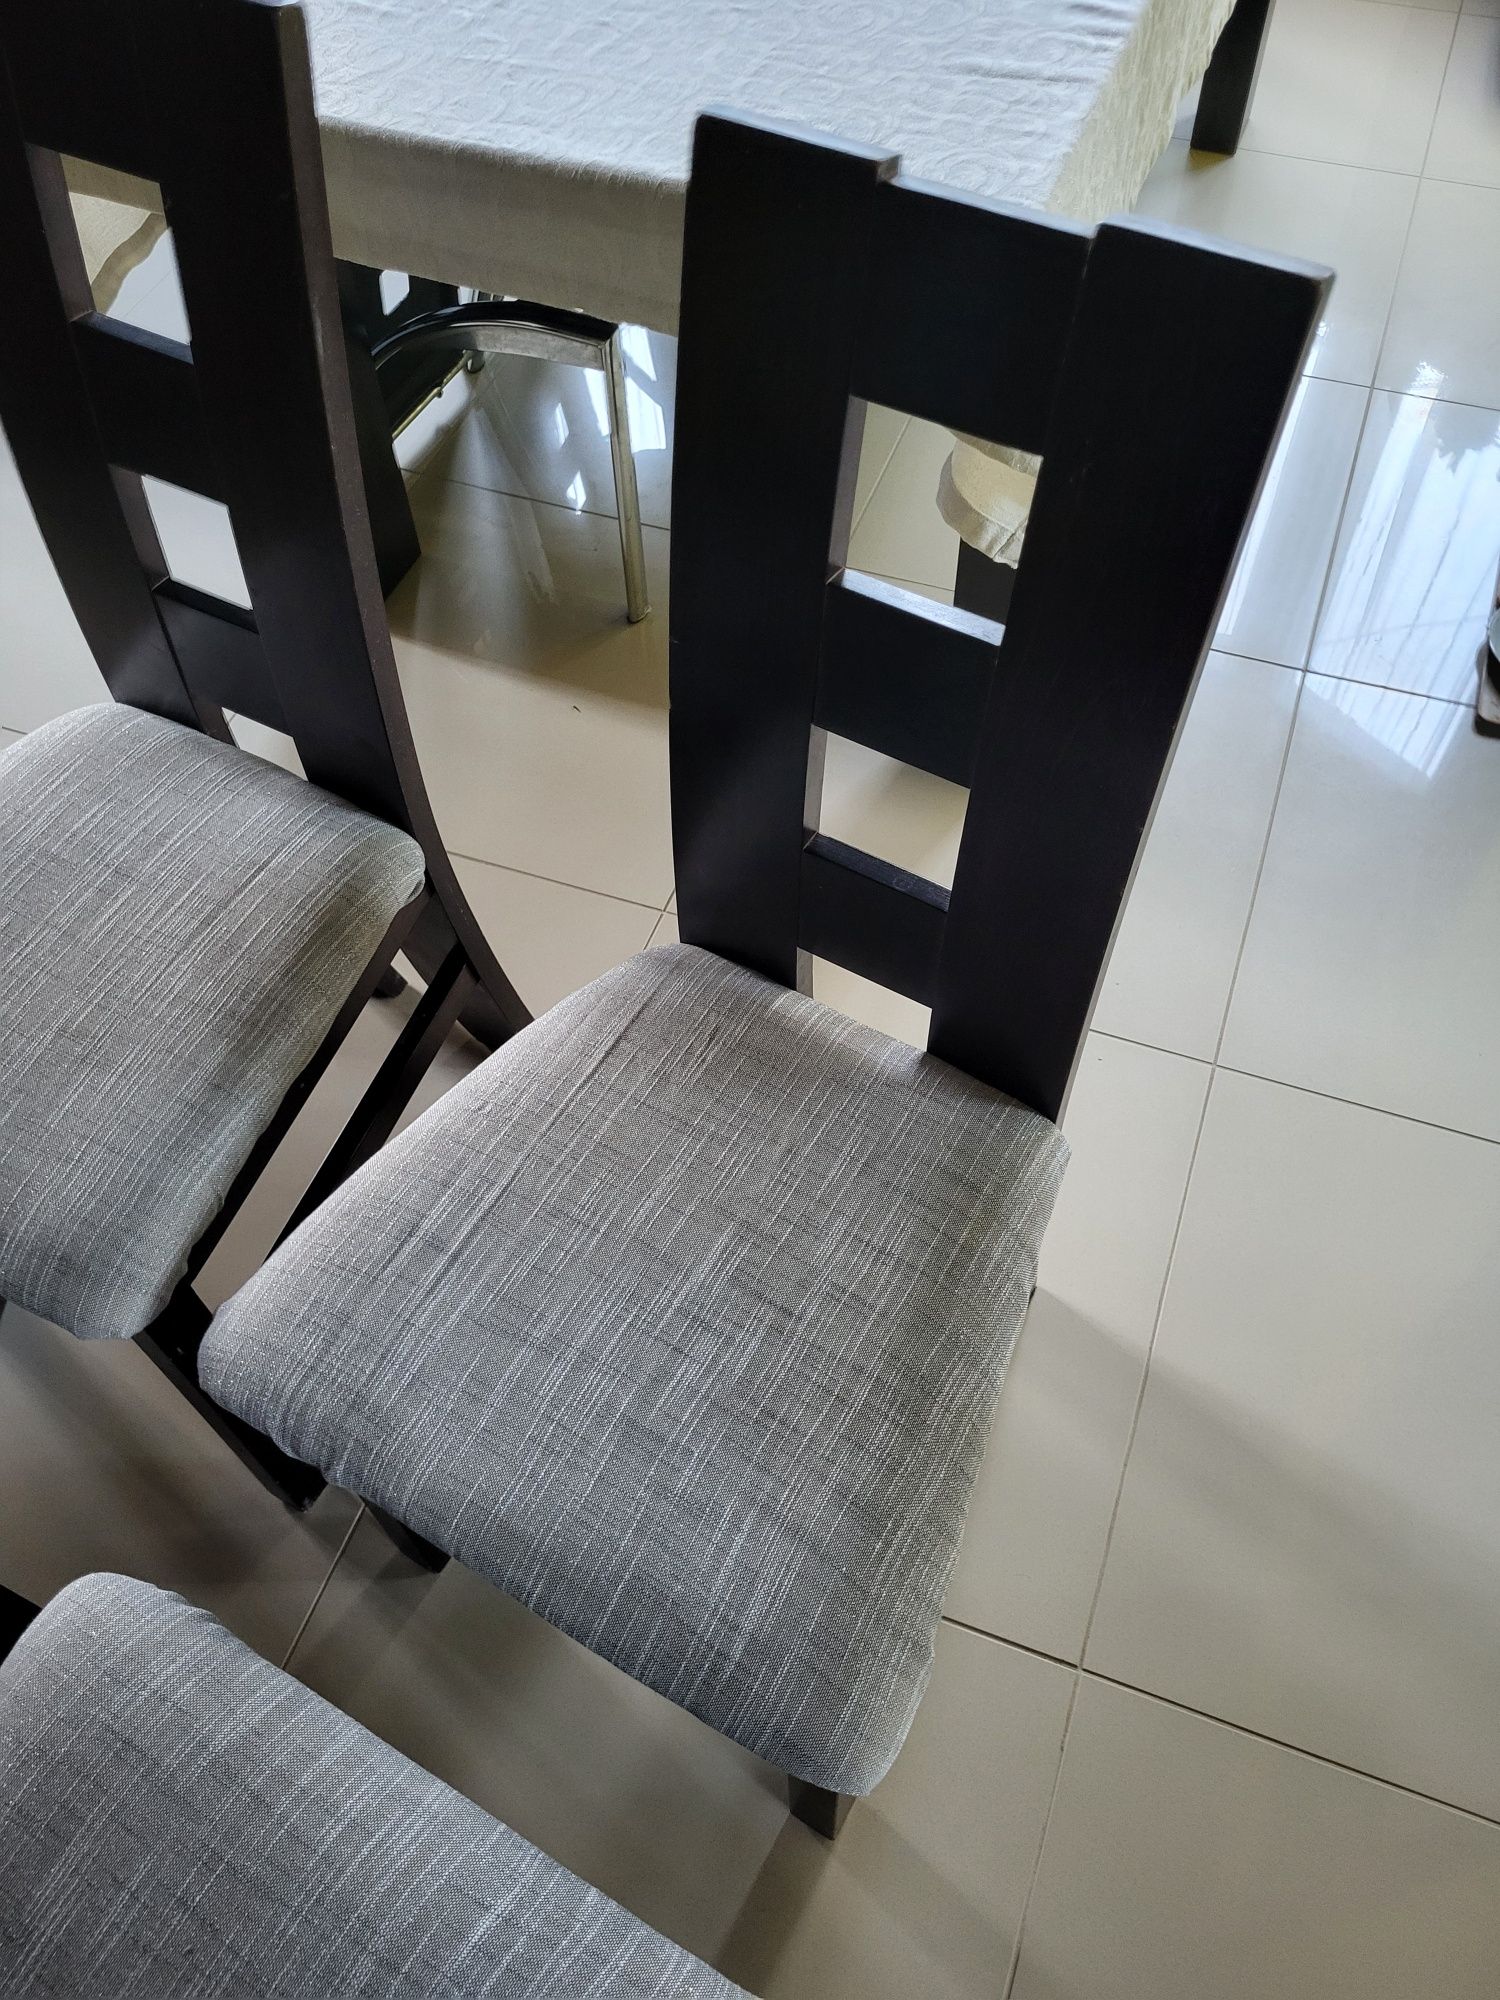 Krzesło K42 drewno lite tapicerowane drewniane okazja tanio pilne